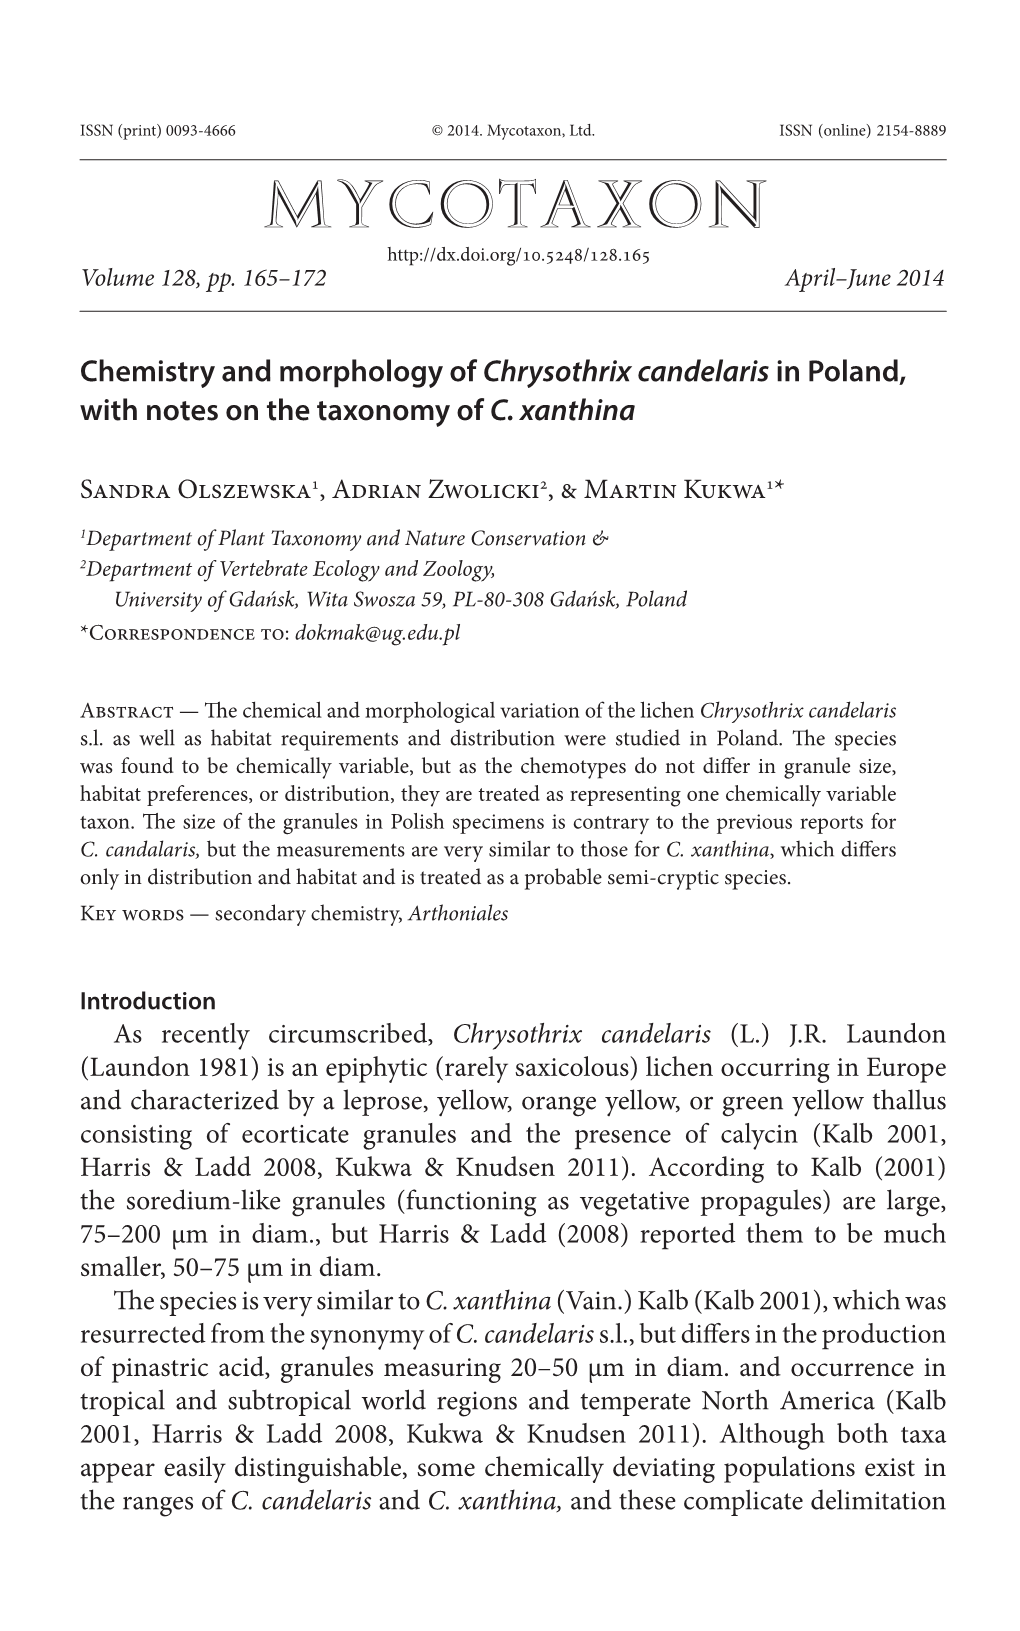 Chemistry and Morphology of &lt;I&gt;Chrysothrix&lt;/I&gt; &lt;I&gt;Candelaris&lt;/I&gt;